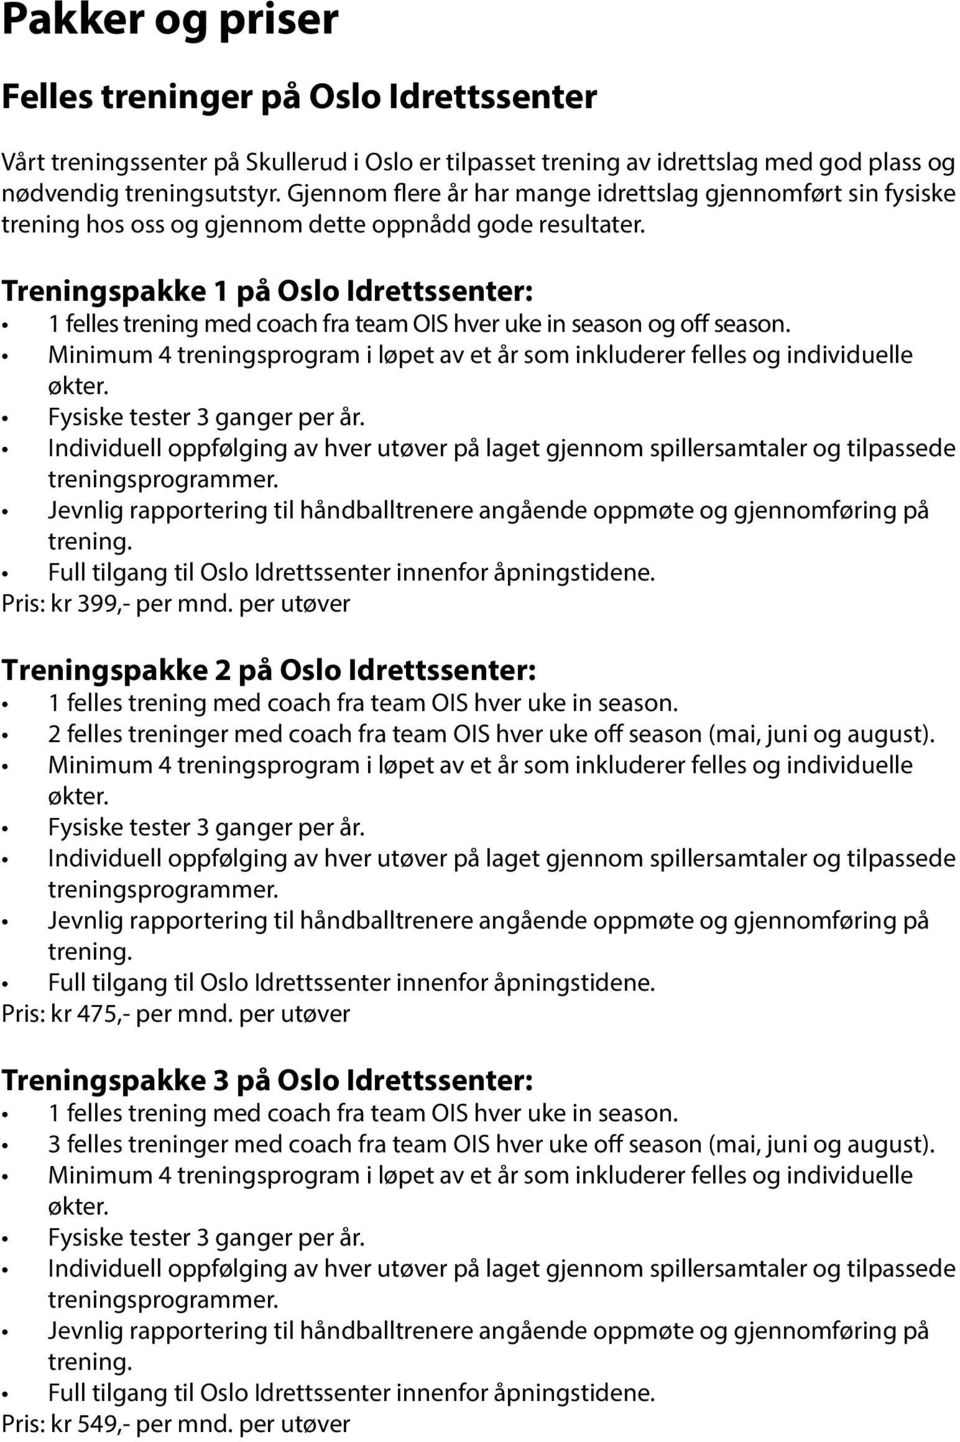 Treningspakke 1 på Oslo Idrettssenter: 1 felles trening med coach fra team OIS hver uke in season og off season. Minimum 4 treningsprogram i løpet av et år som inkluderer felles og individuelle økter.